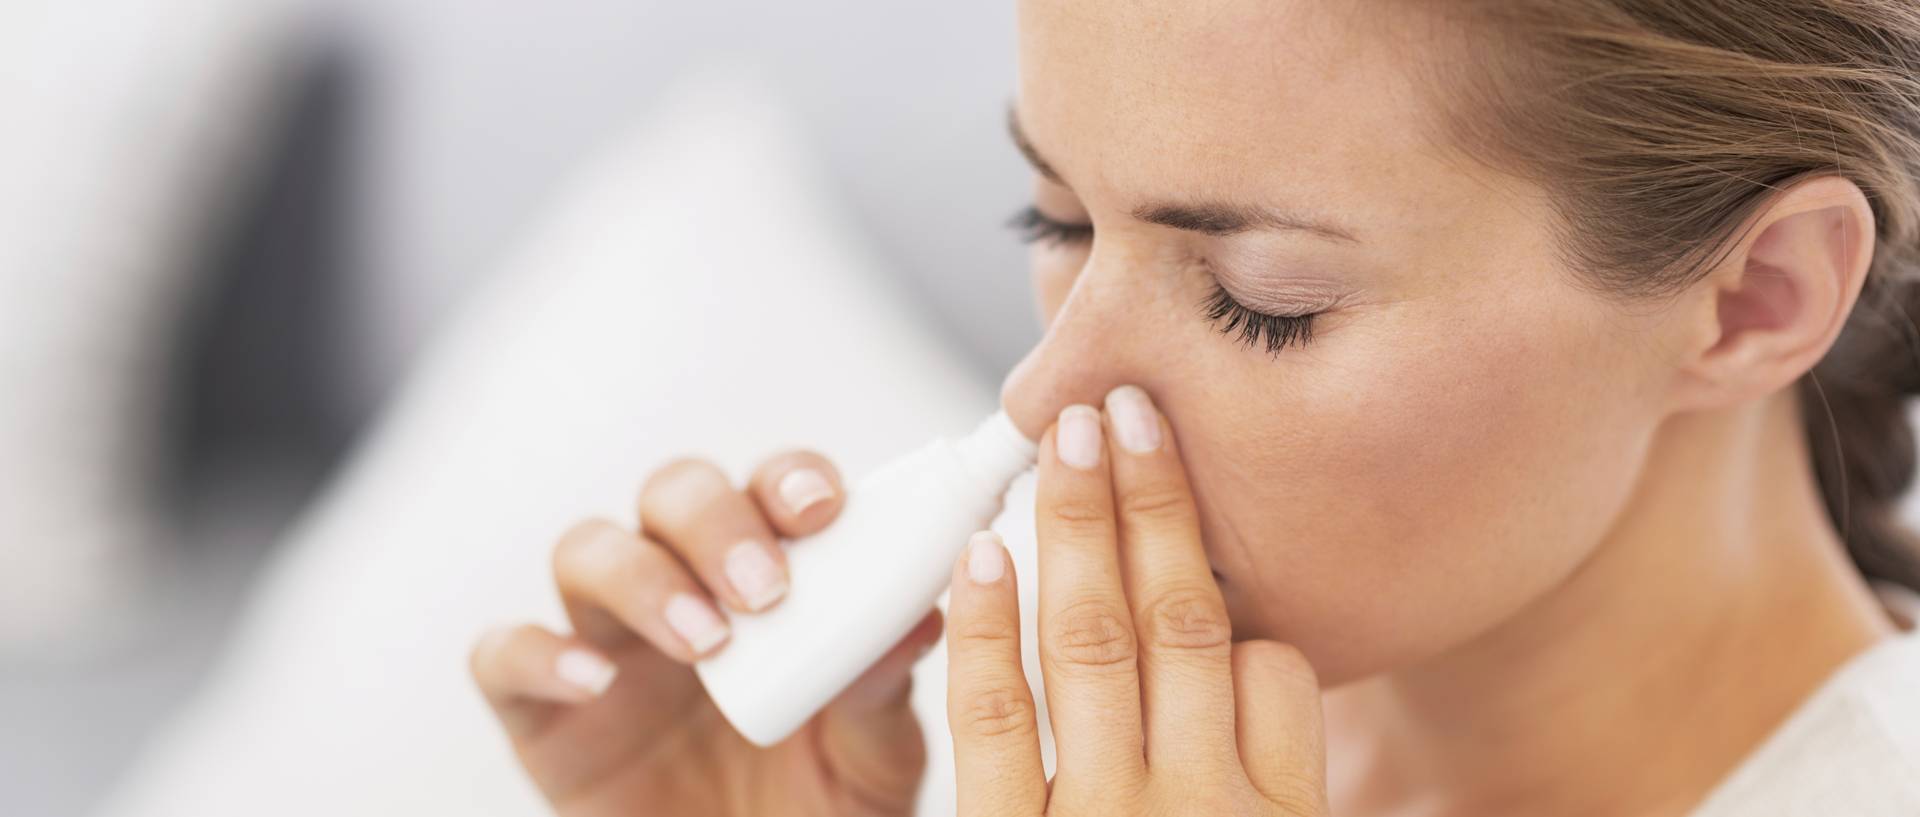 Чем лечить насморк: эффективные препараты и народные средства, чтобы быстро справиться с заболеванием